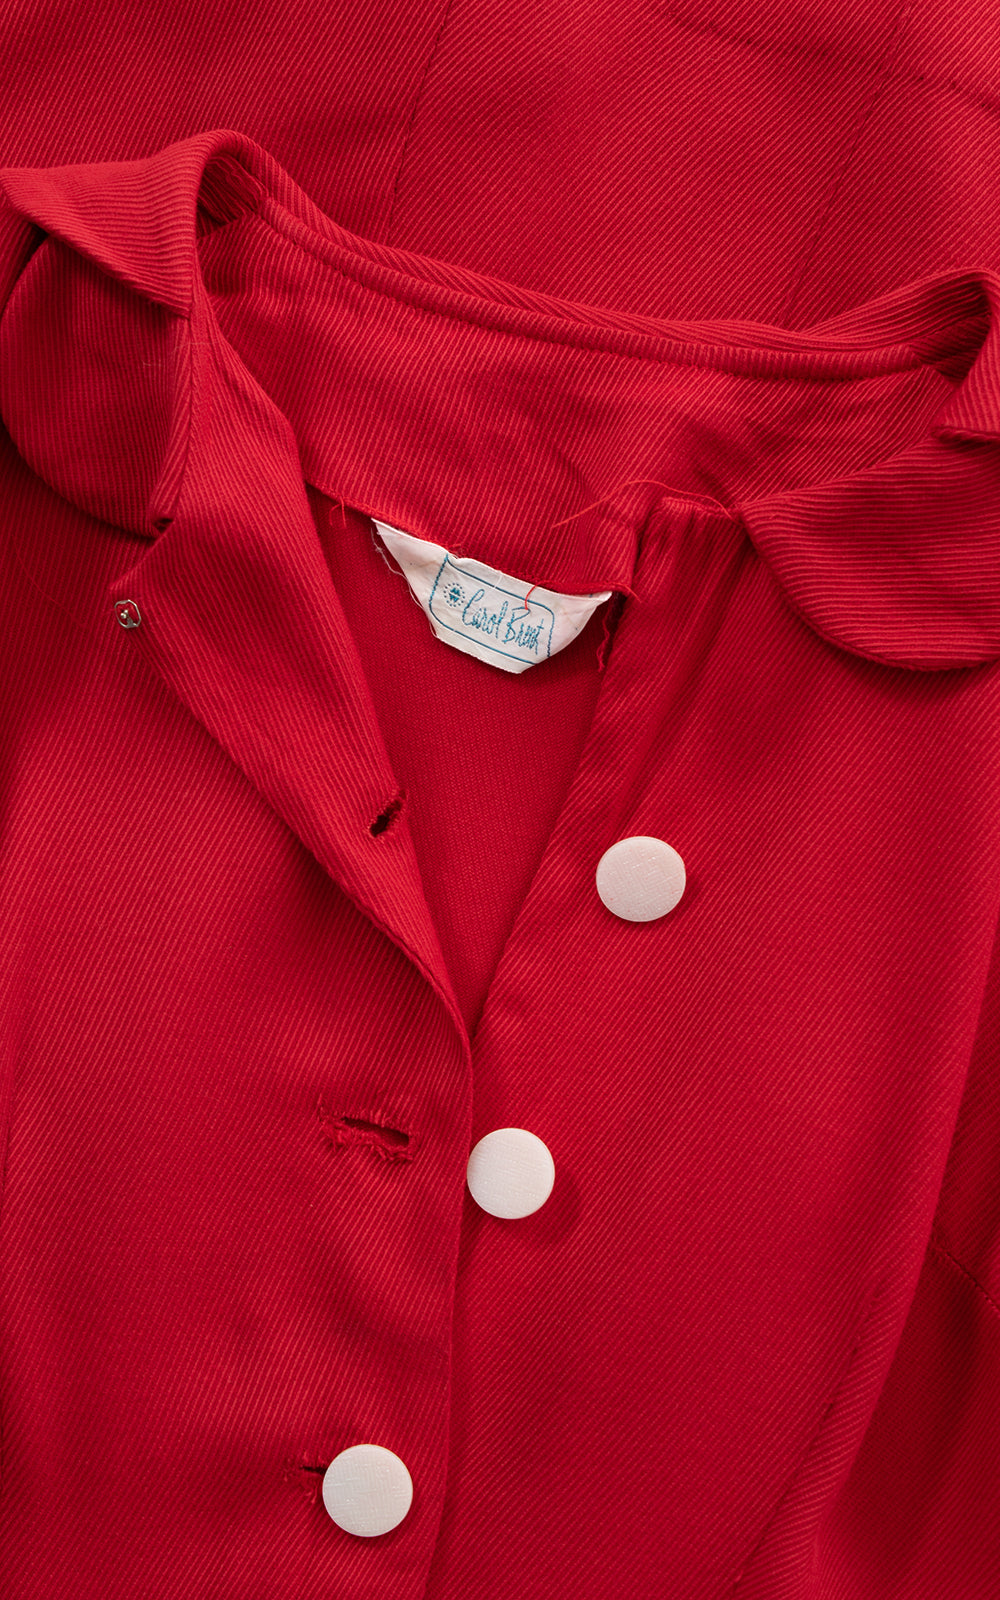 本店は 【Peter Do】Stripe peter shirt red 36 シャツ - afroaisummit.com